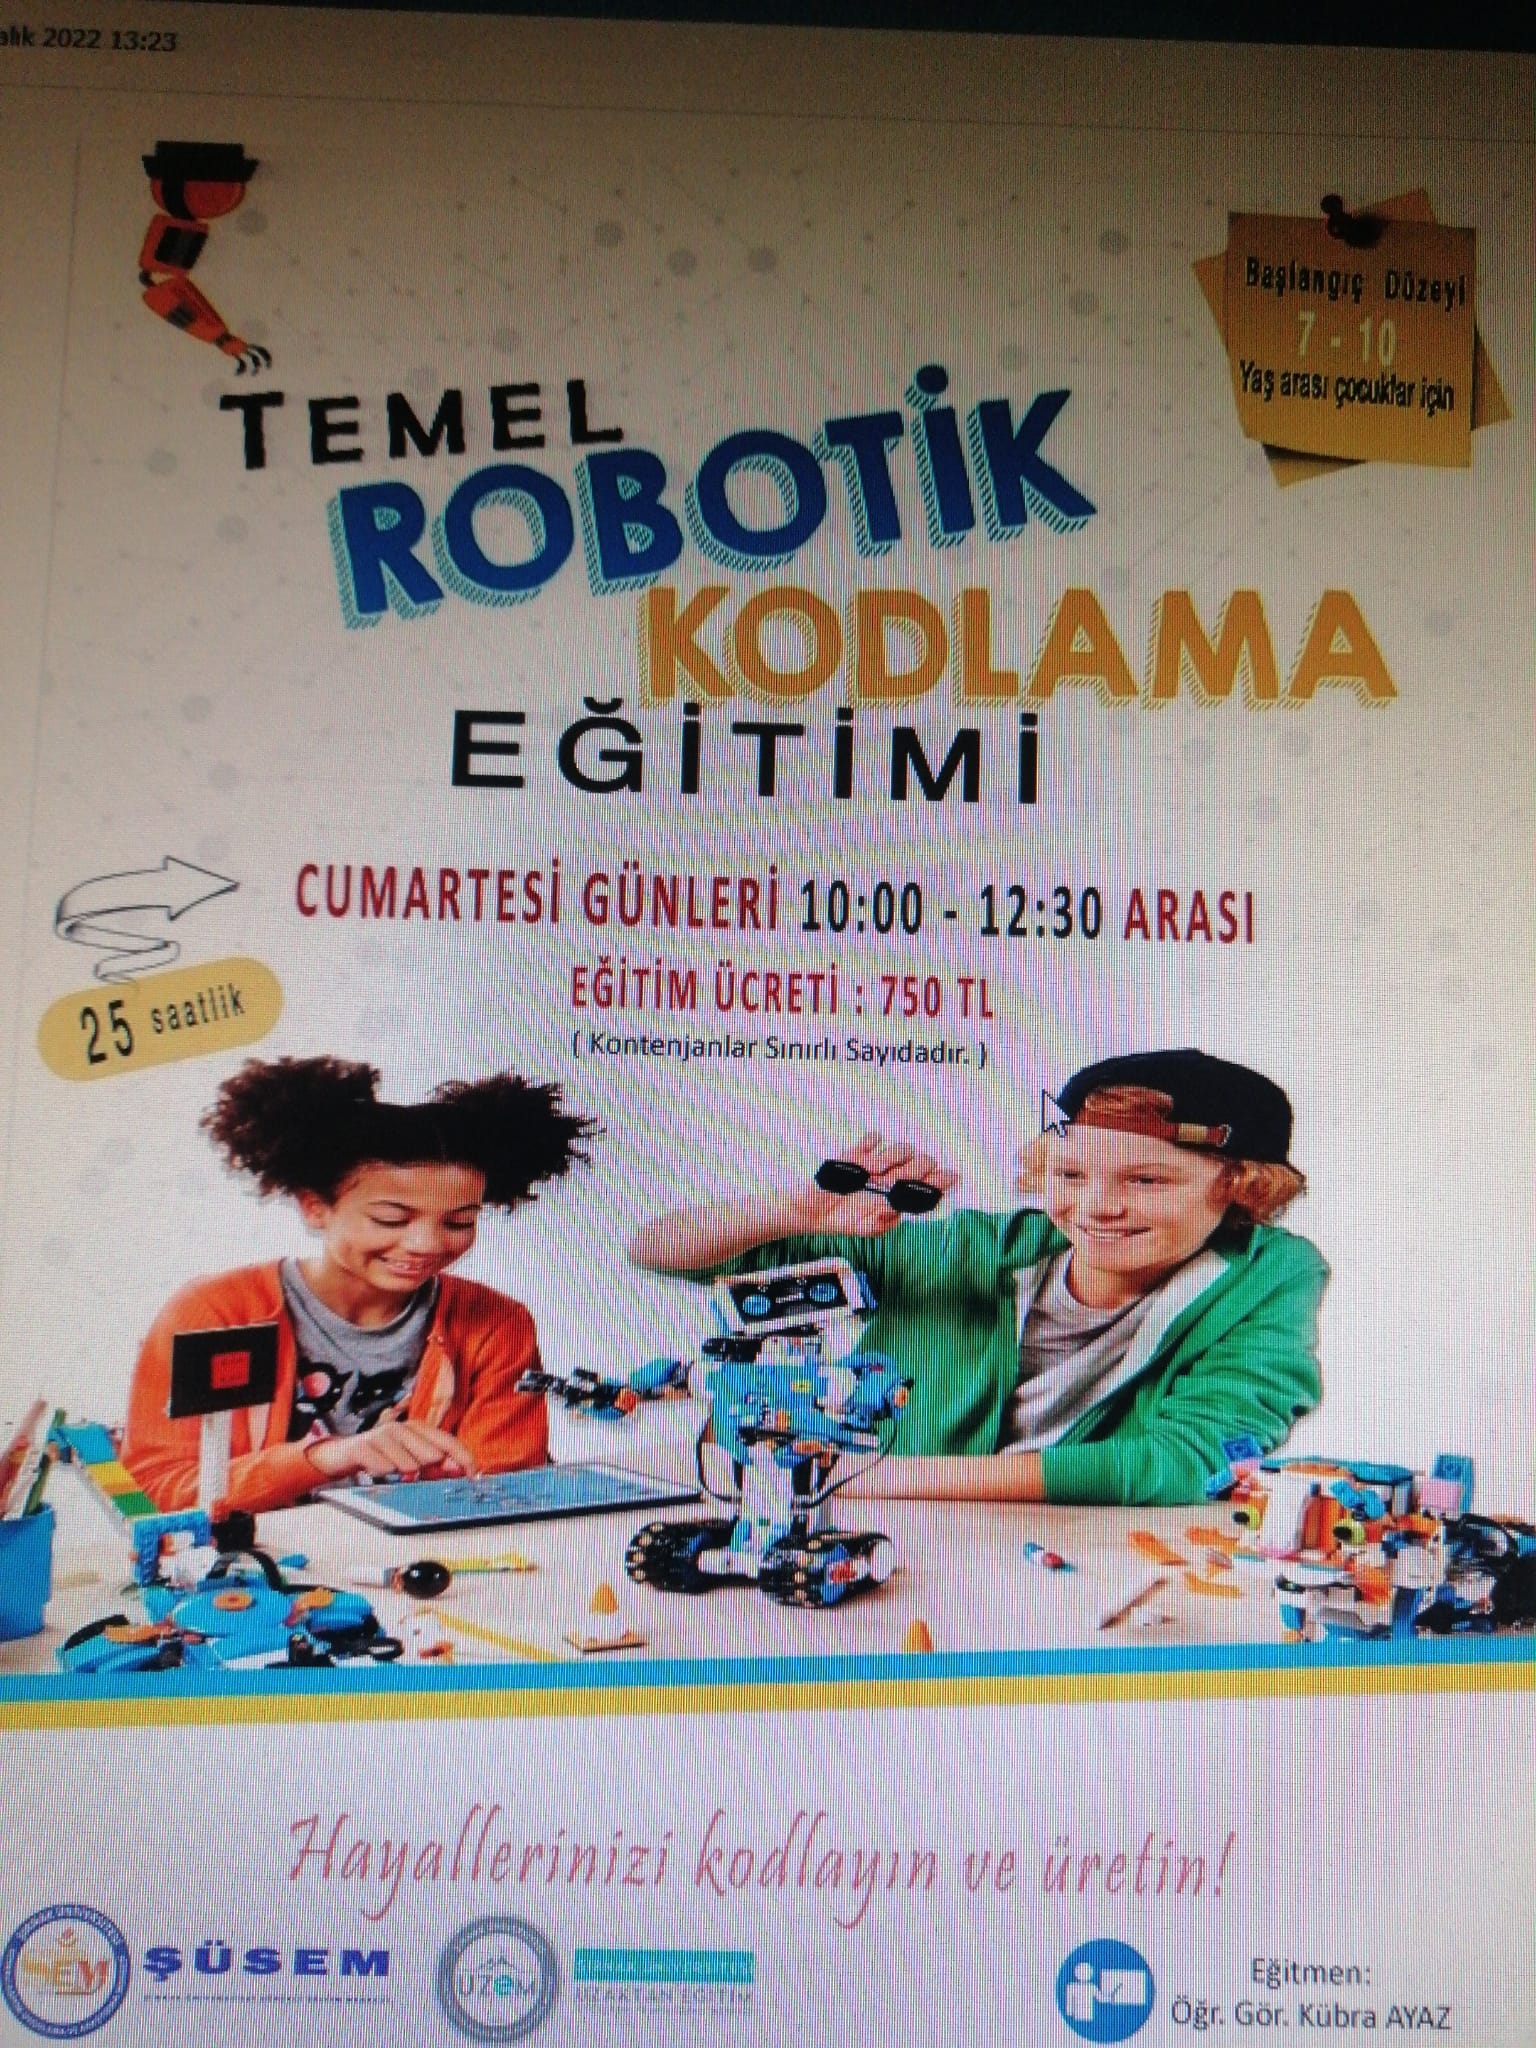 Şırnak Üniversitesi 7-10 Yaş Grubu Temel Robotik Kodlama Eğitimi Verecek